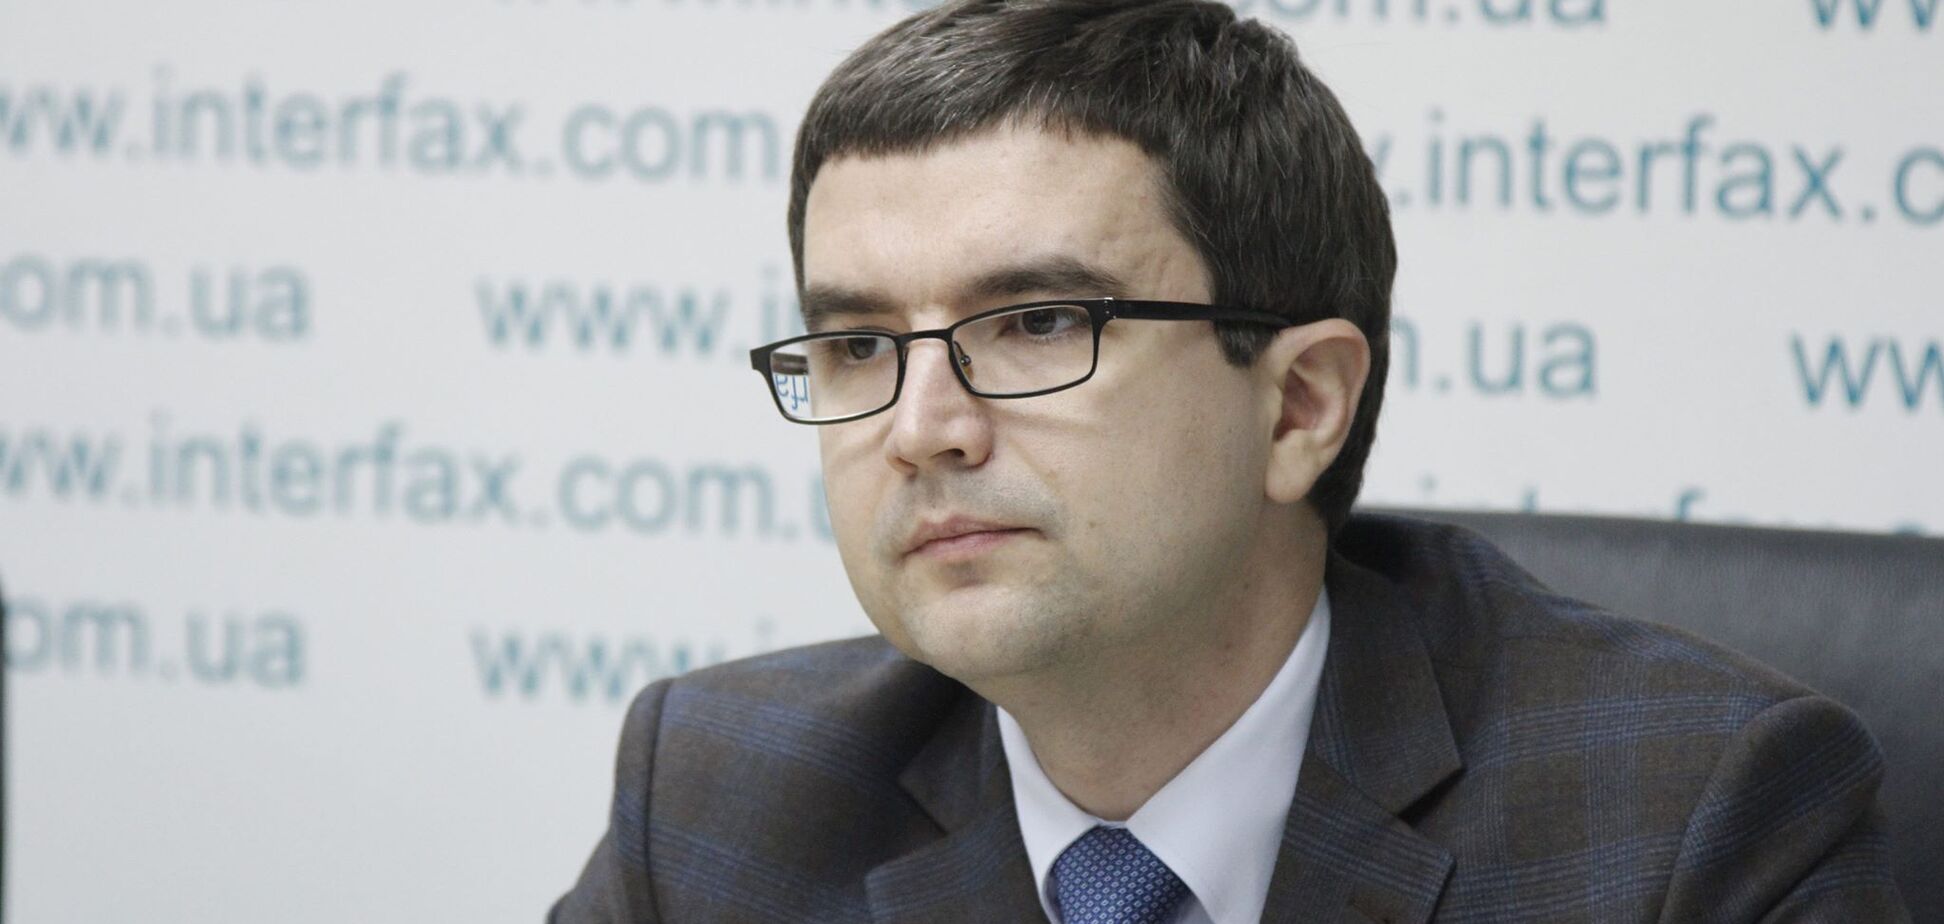 Адвокат Насирова: обязанности и ограничения в отношении Романа Насирова – незаконны, недействительны и должны быть отменены судом 